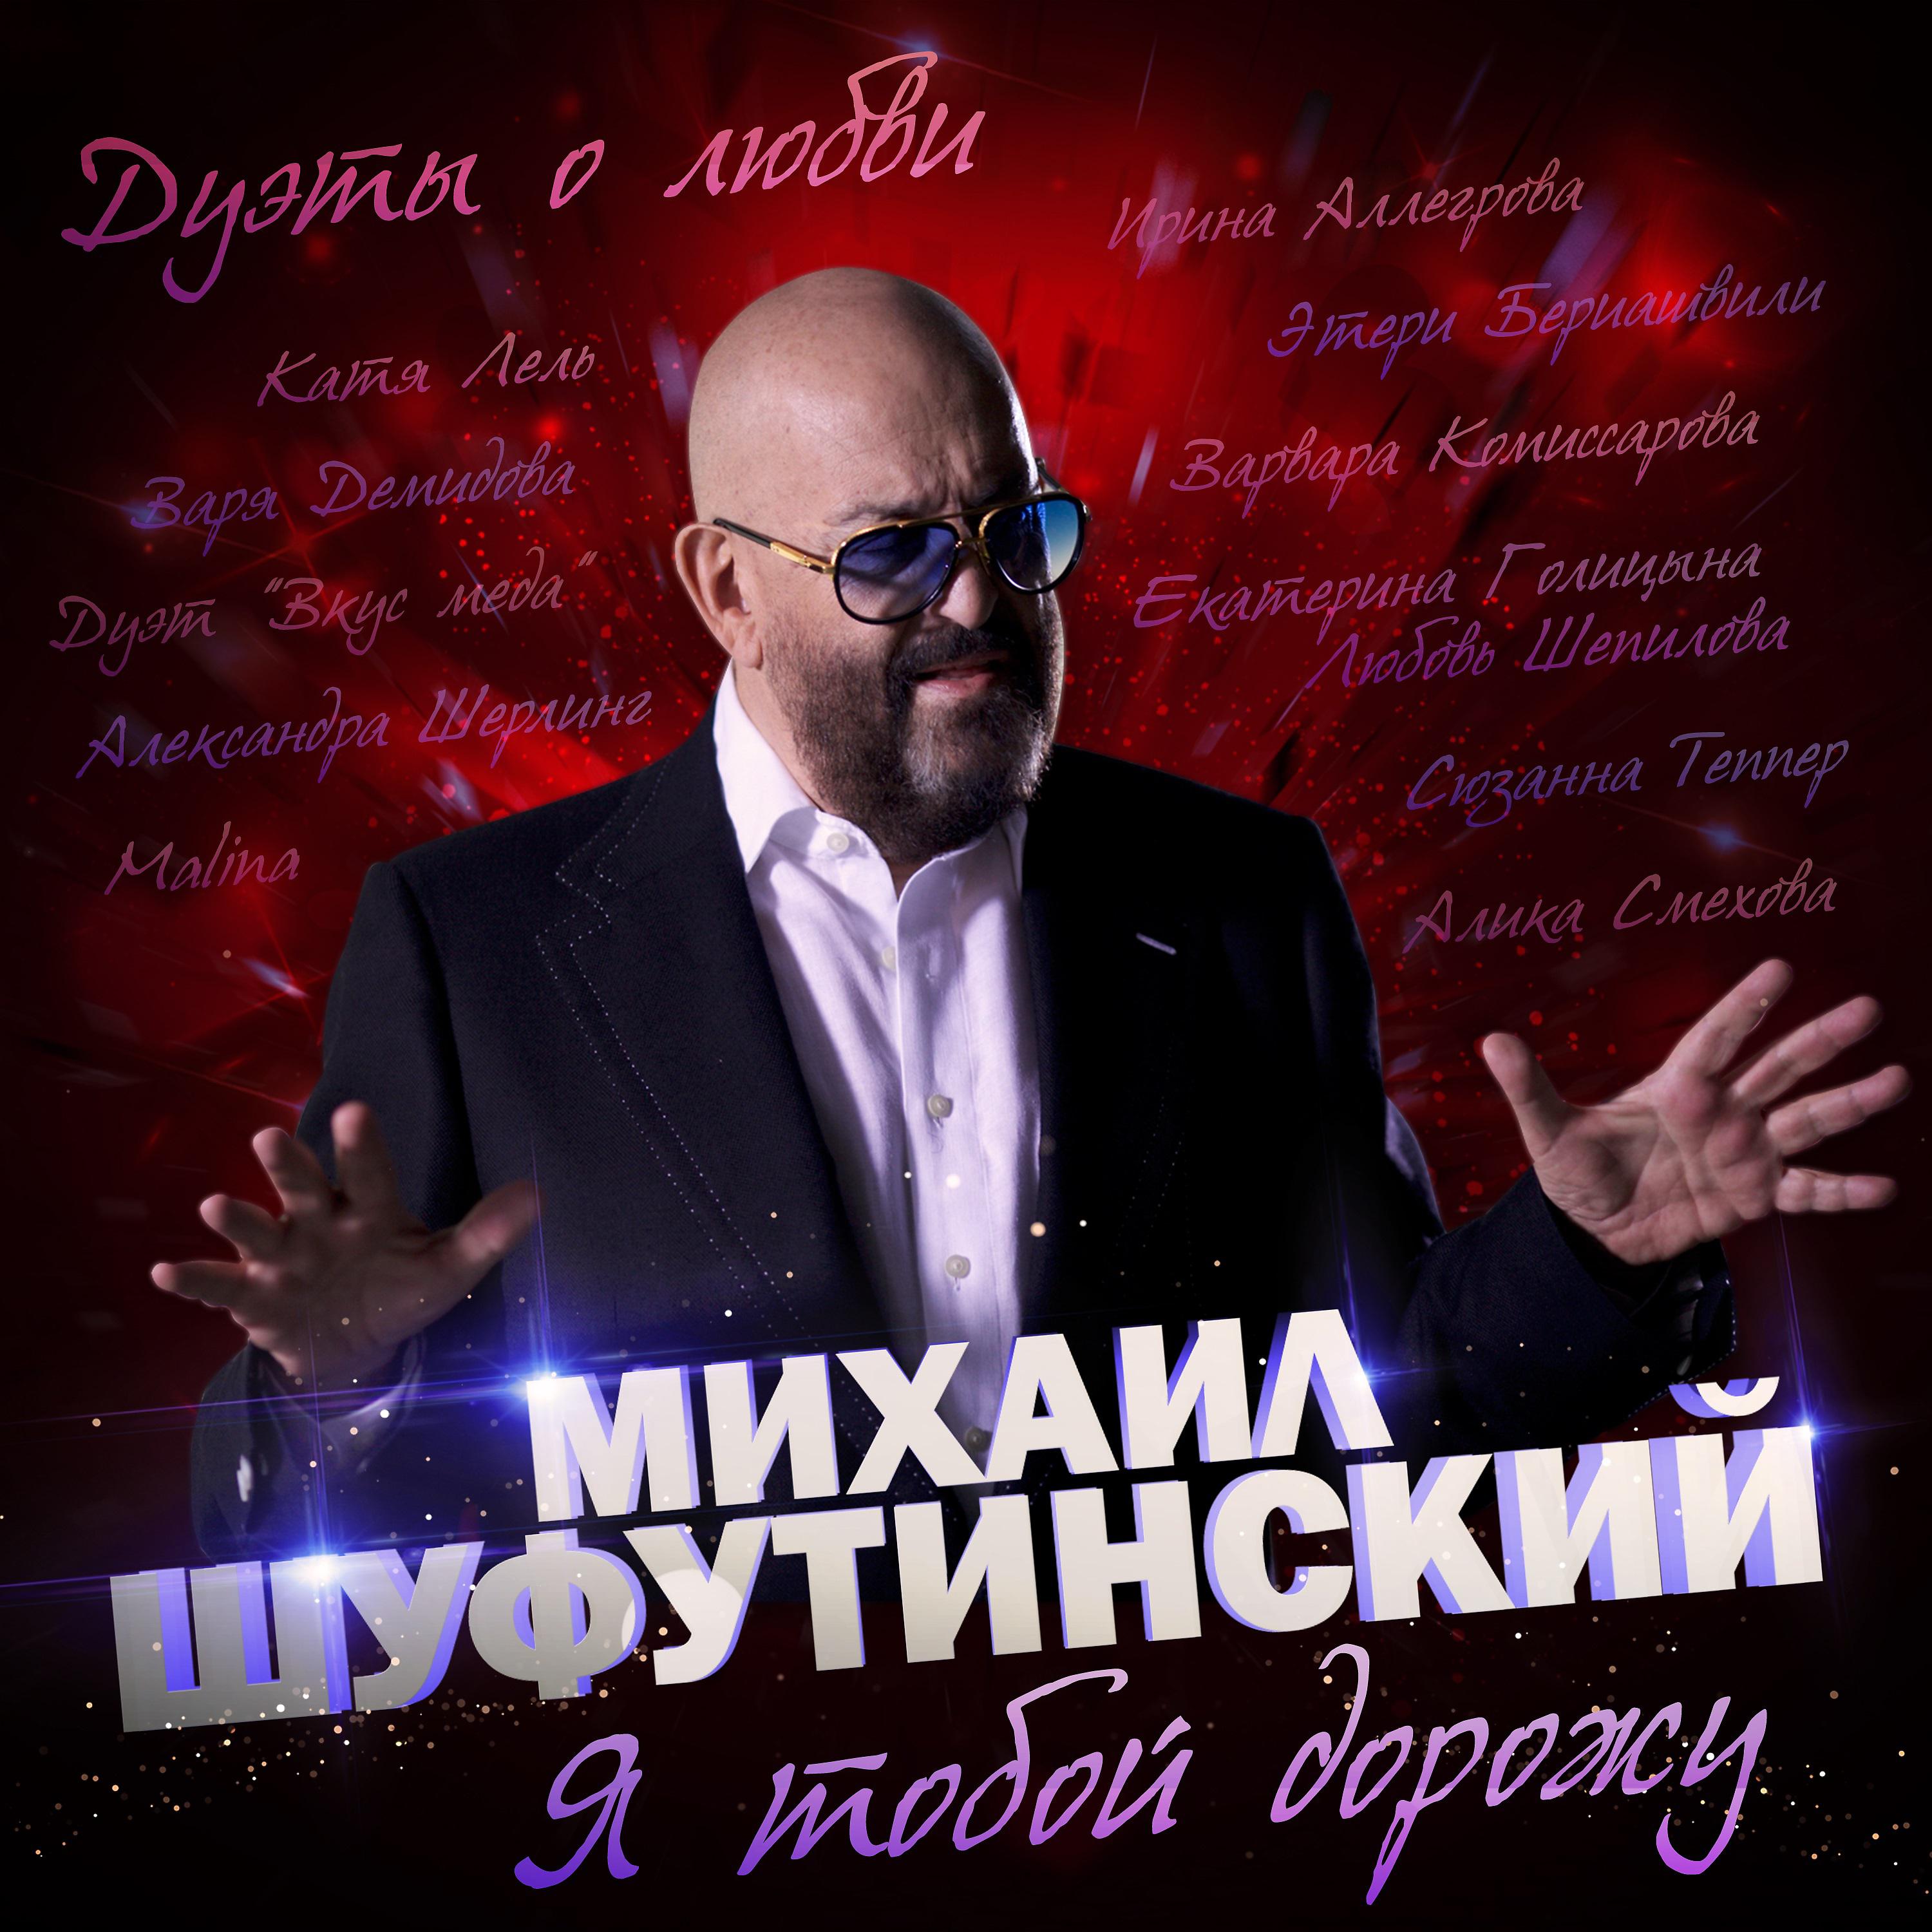 Михаил Шуфутинский feat. Катя Лель - Шарада ночь